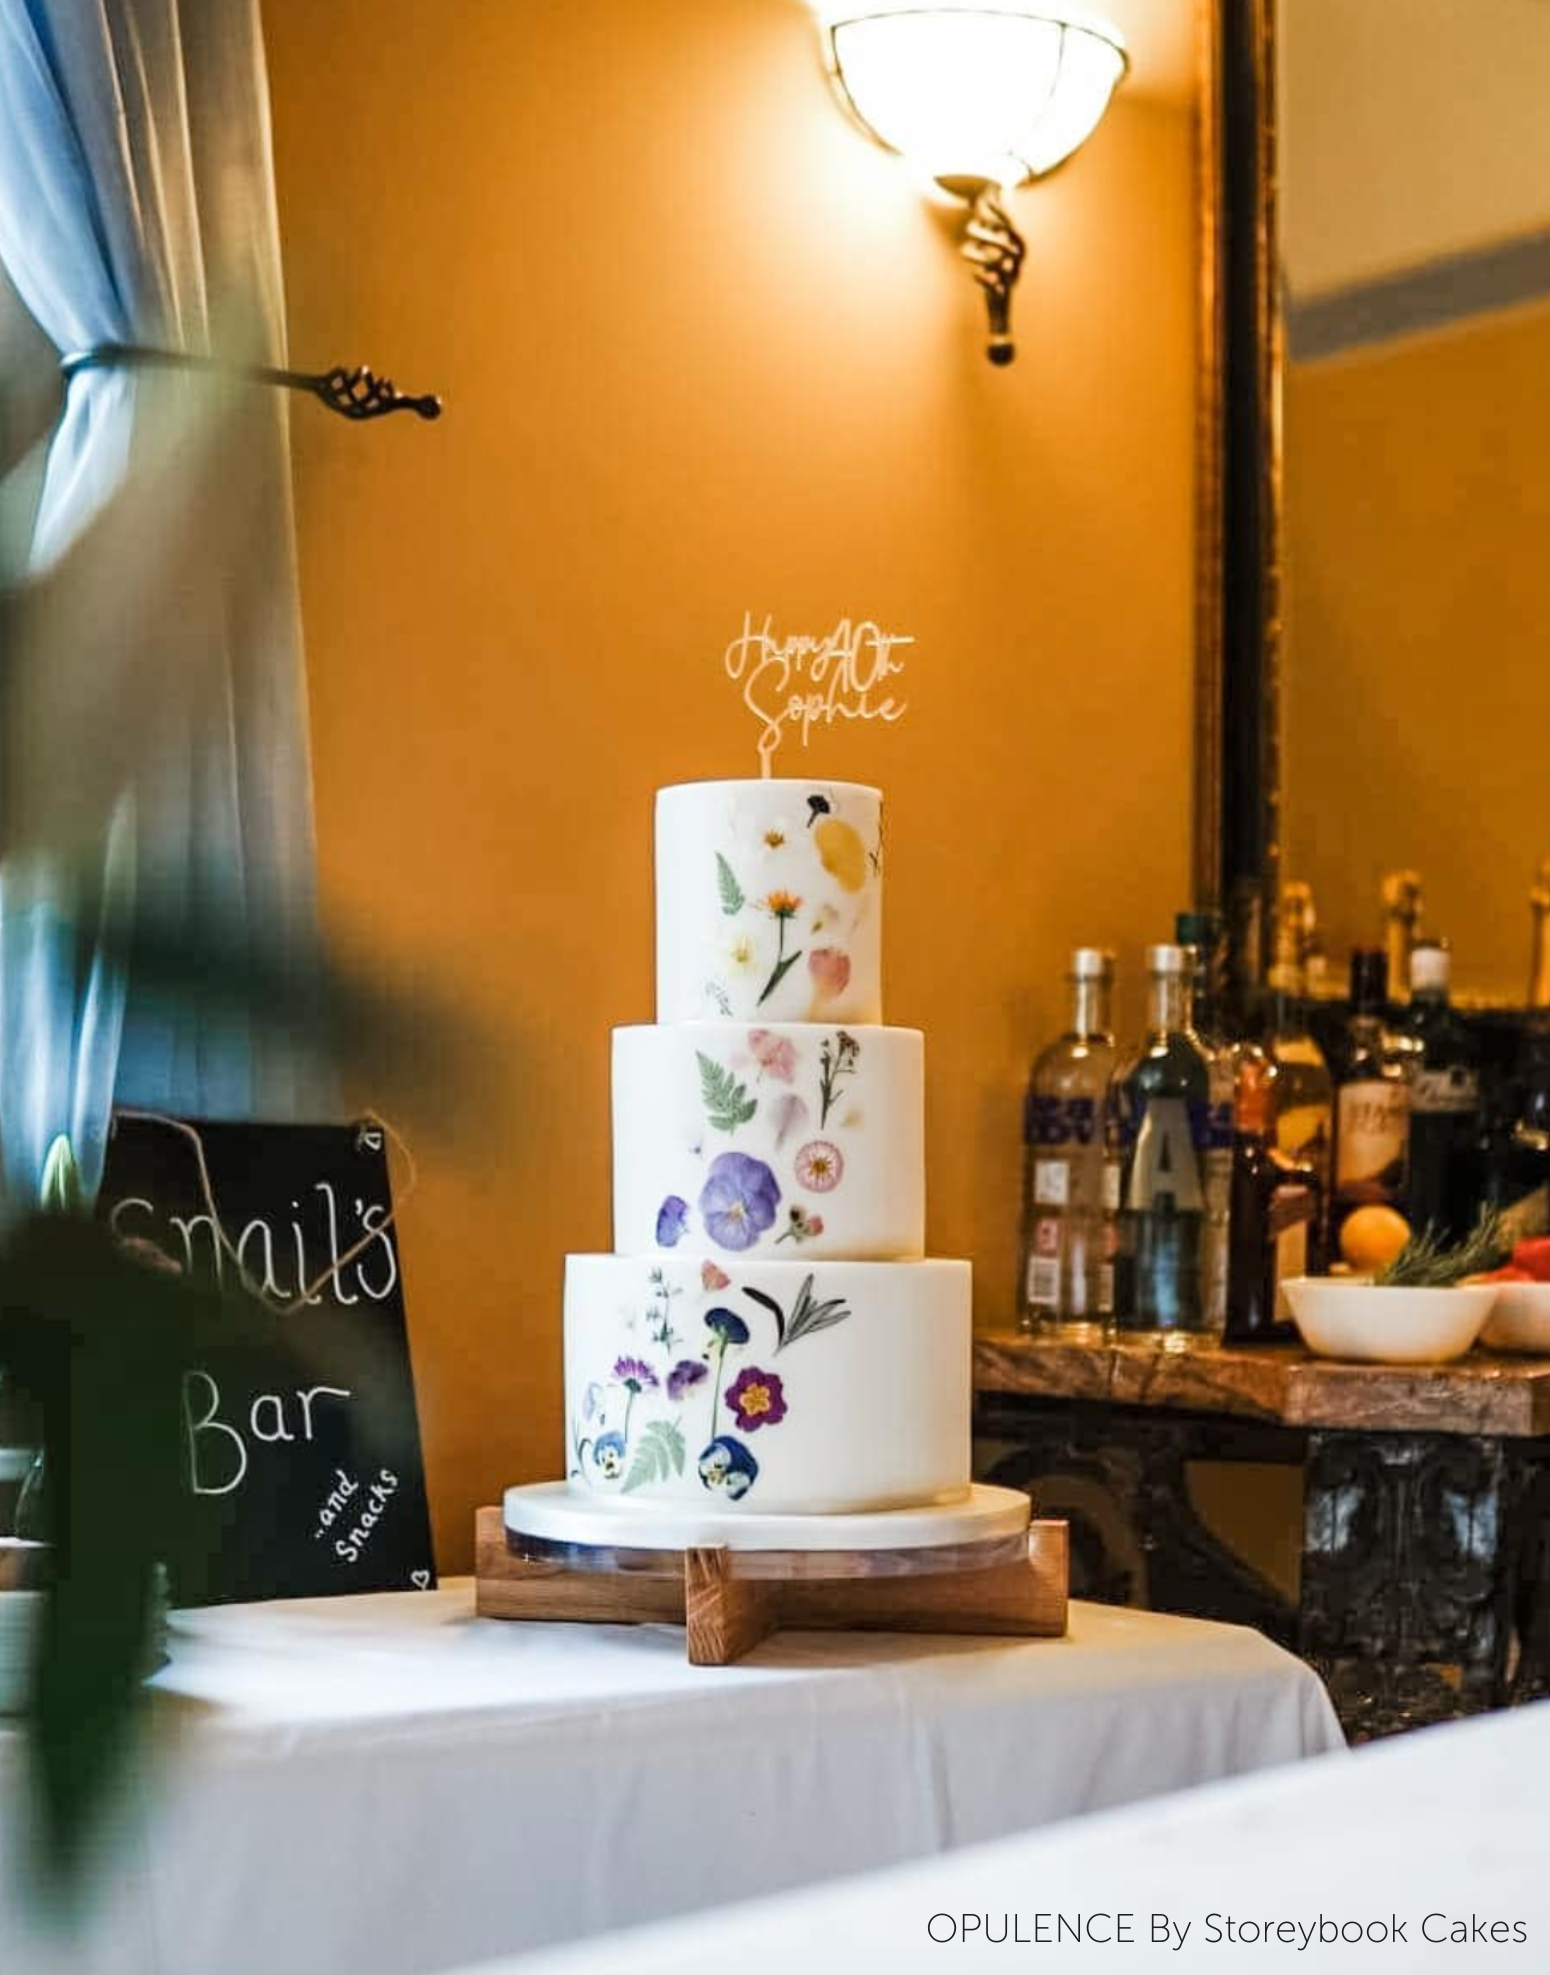 Cake board gâteau personnalisé mariage